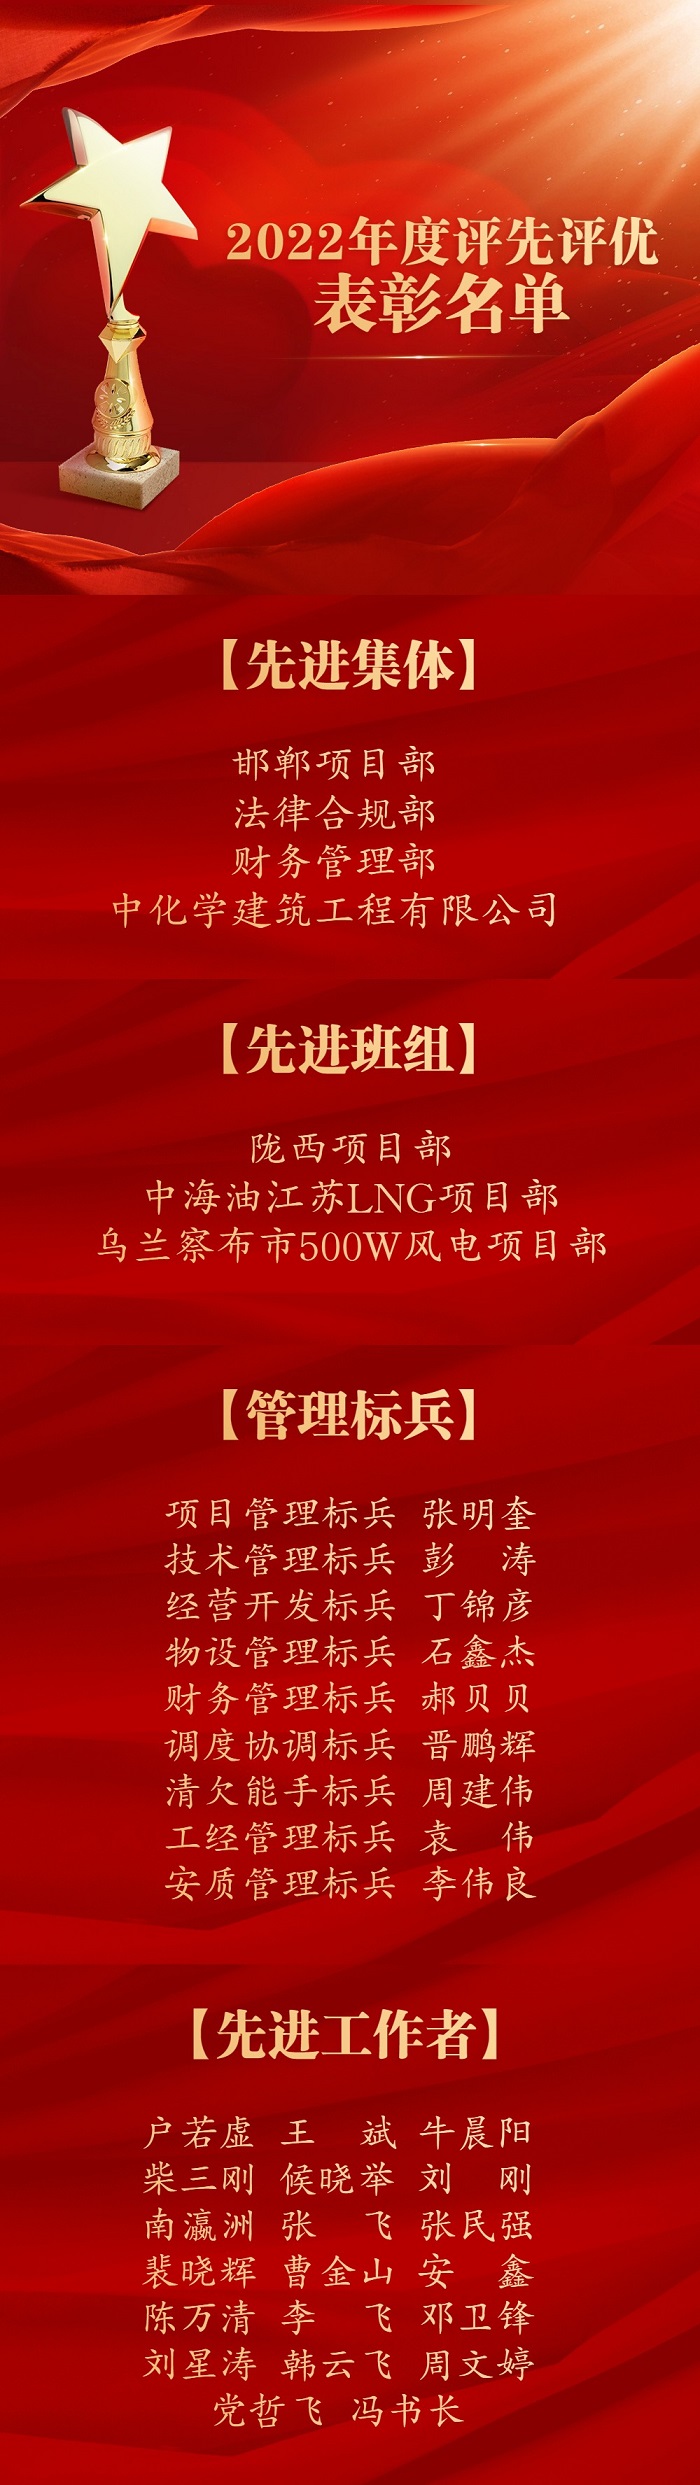 融媒体人物表彰颁奖红金排版文章长图.jpg